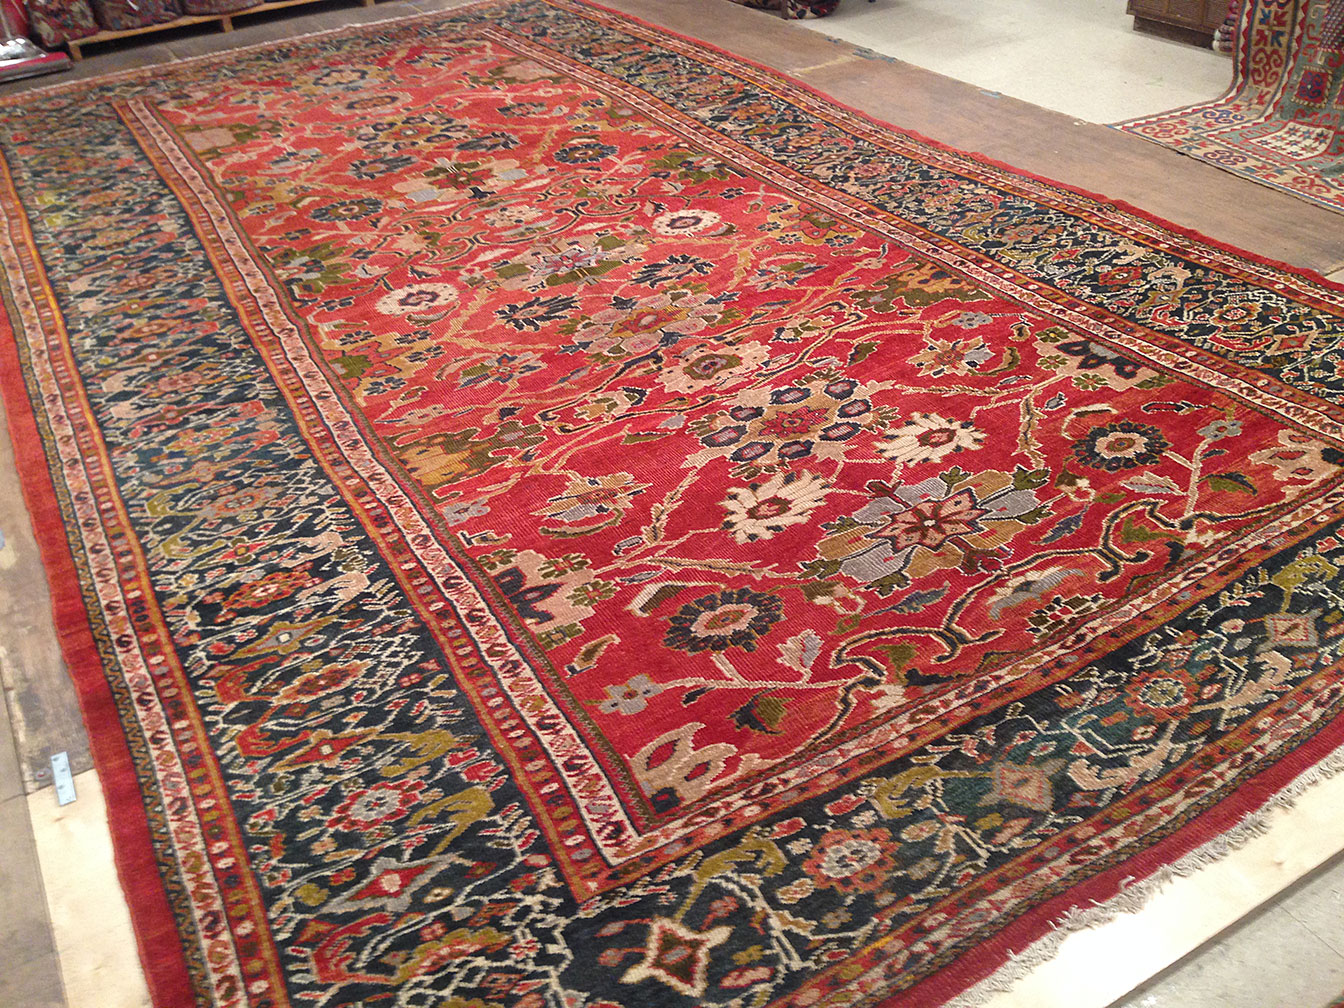 Antique sultan abad Carpet - # 50307